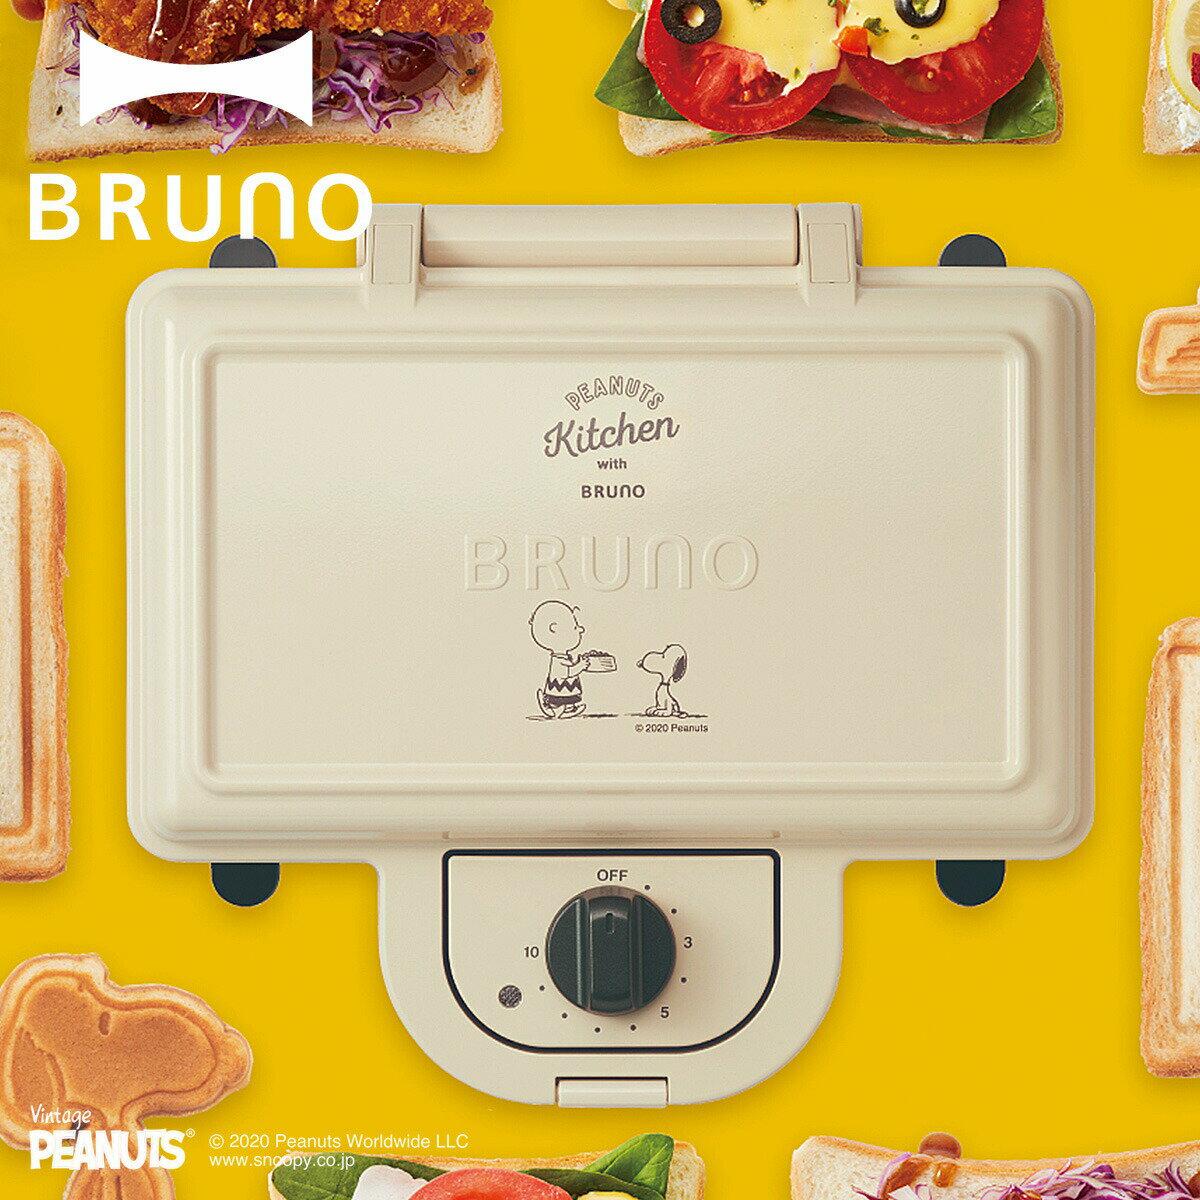 BRUNO BOE069 ブルーノ ホットサンドメーカー ダブル スヌーピー パンの耳まで焼ける コンパクト タイマー 朝食 プレート パン トースト 家電 ホワイト エクリュ 白